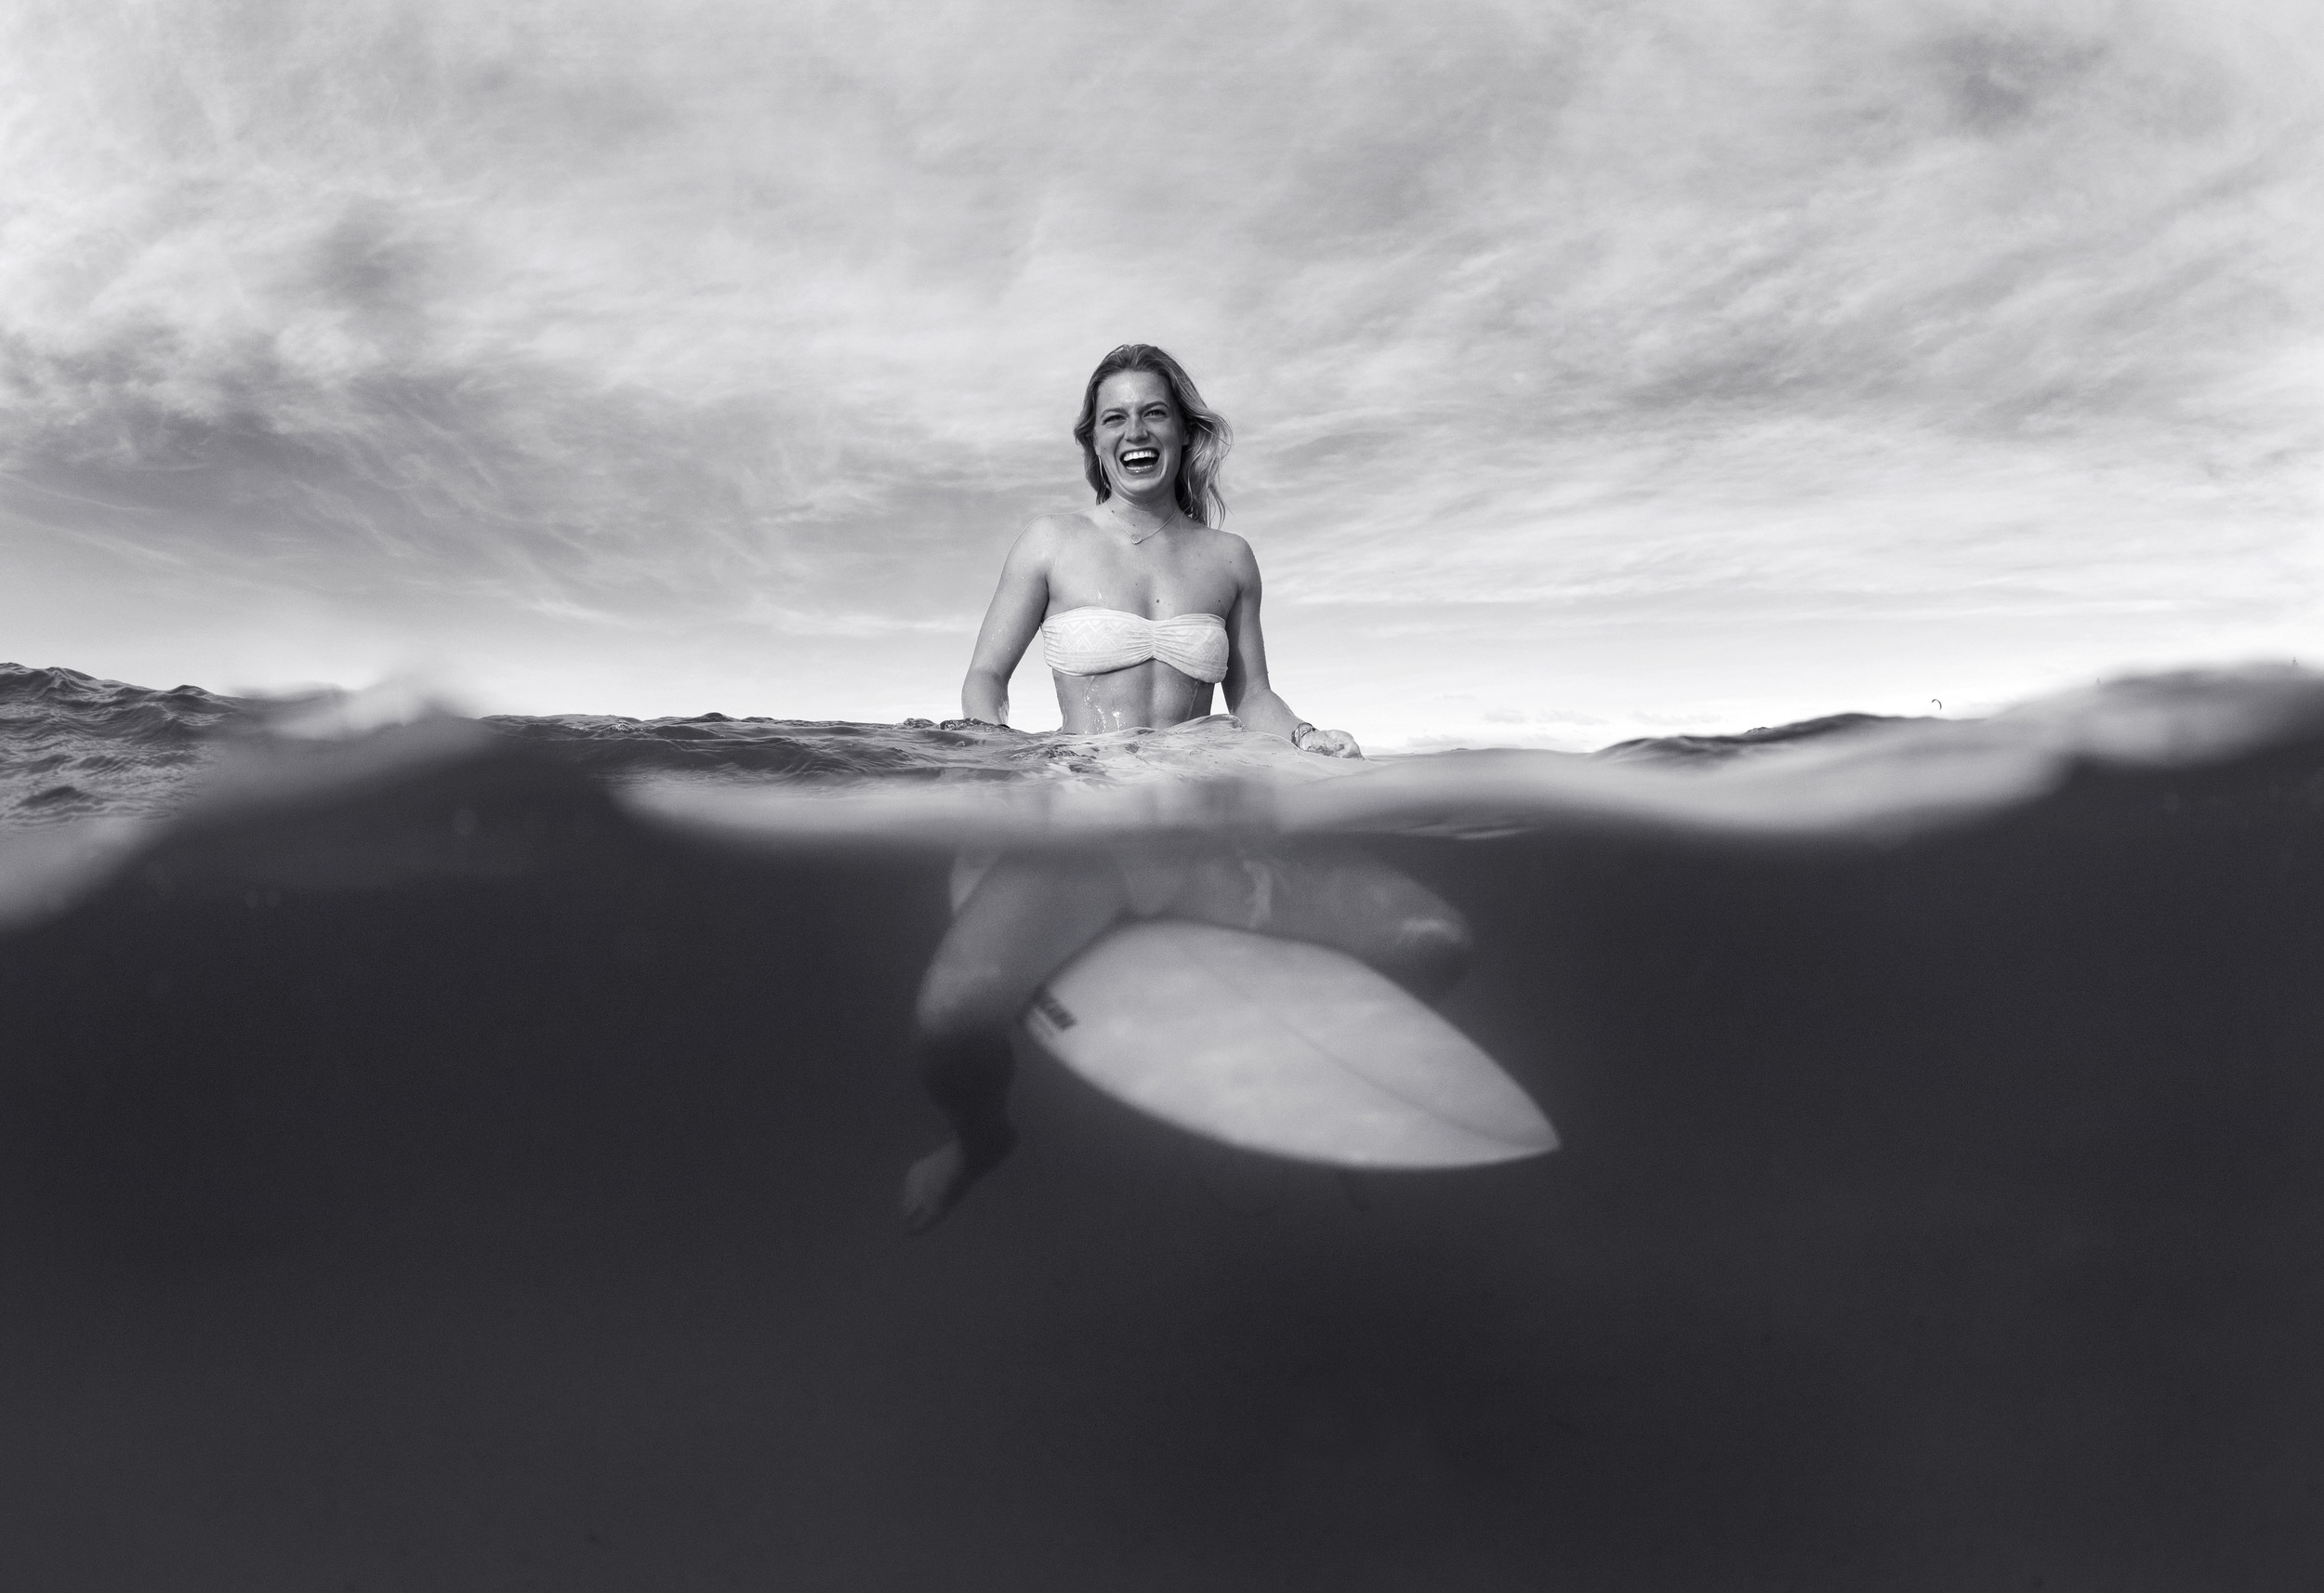 Robin Clark_black and white_Laura_surfing_Australia_DSC7193.jpg